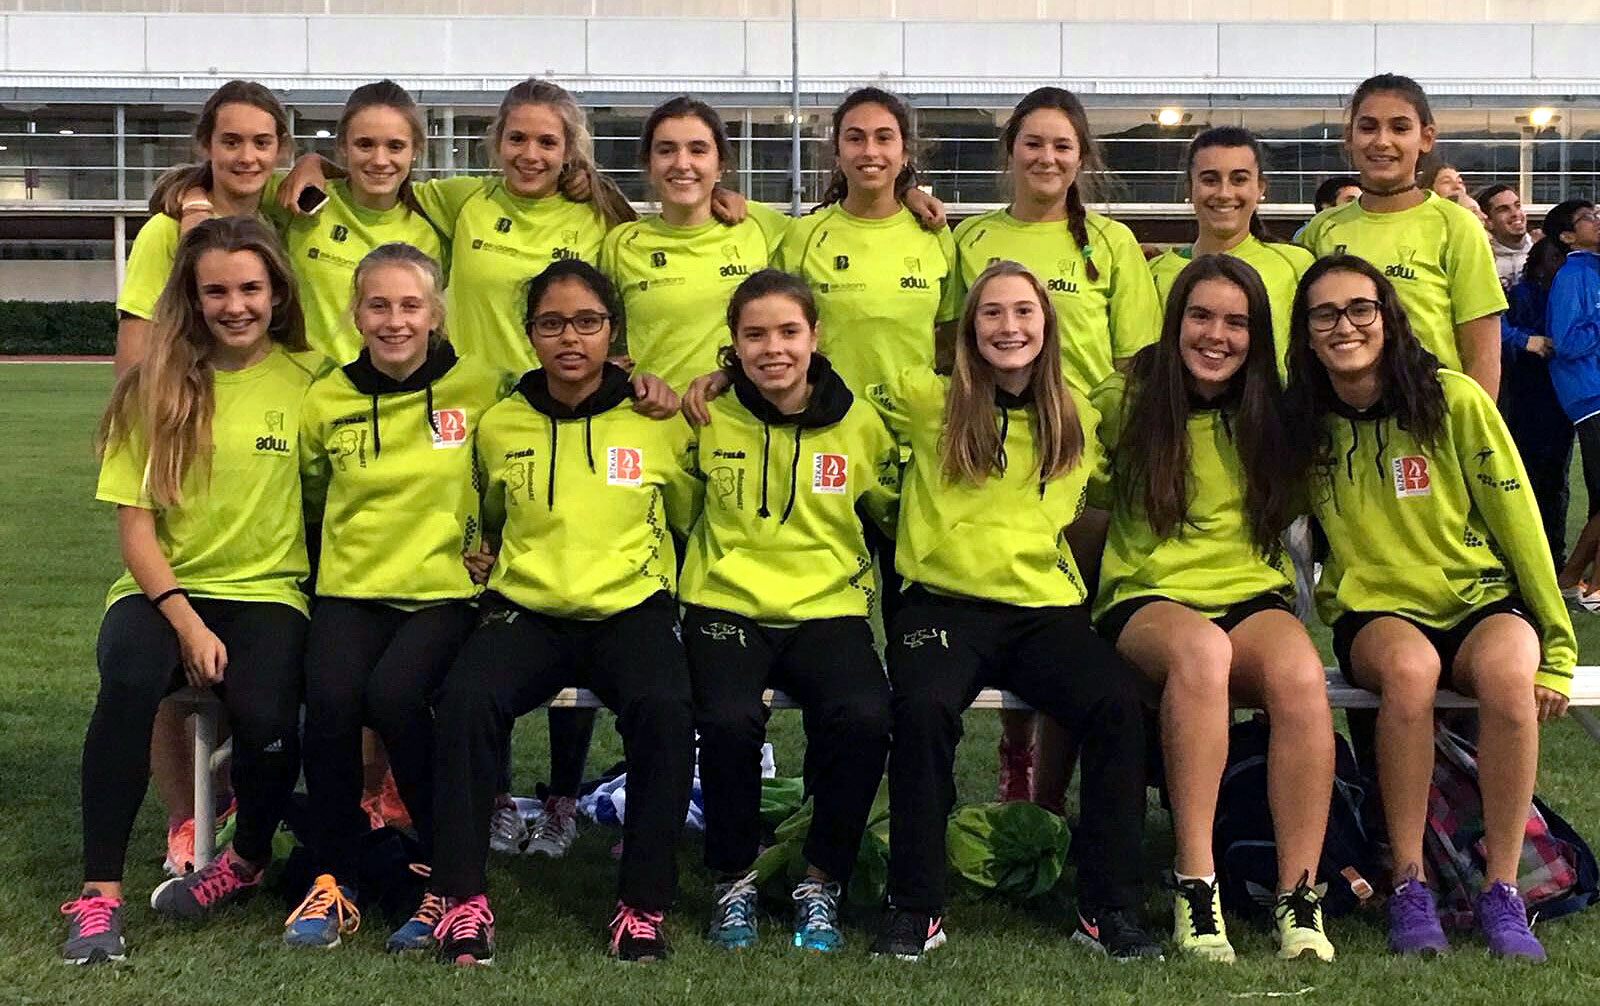 El Bidezabal cierra su participación en el Campeonato de España cadete femenino como primer club vasco